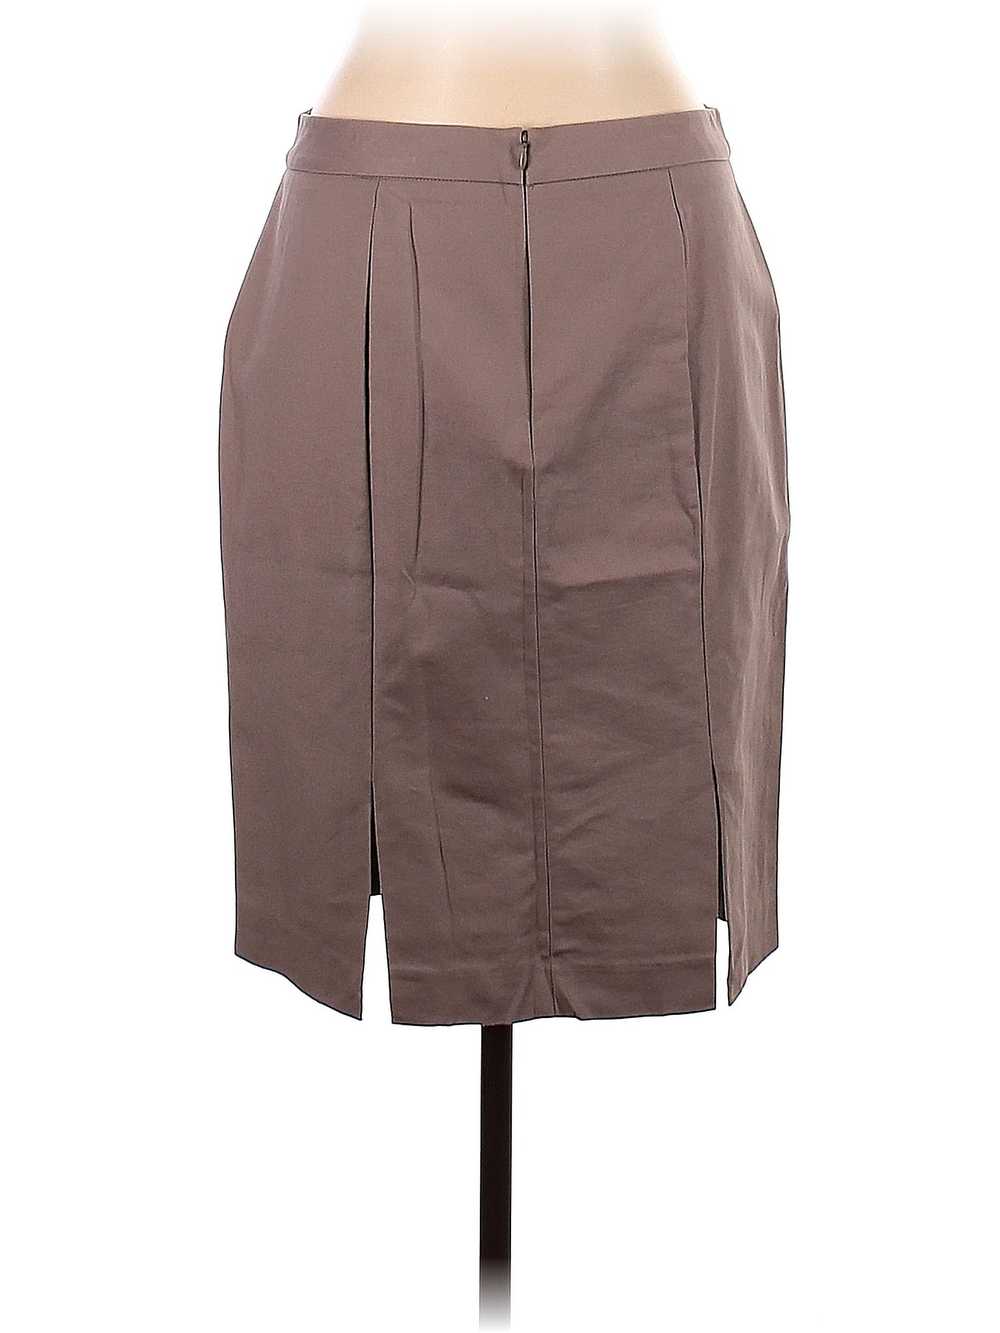 Gap Women Brown Casual Skirt 10 - image 2